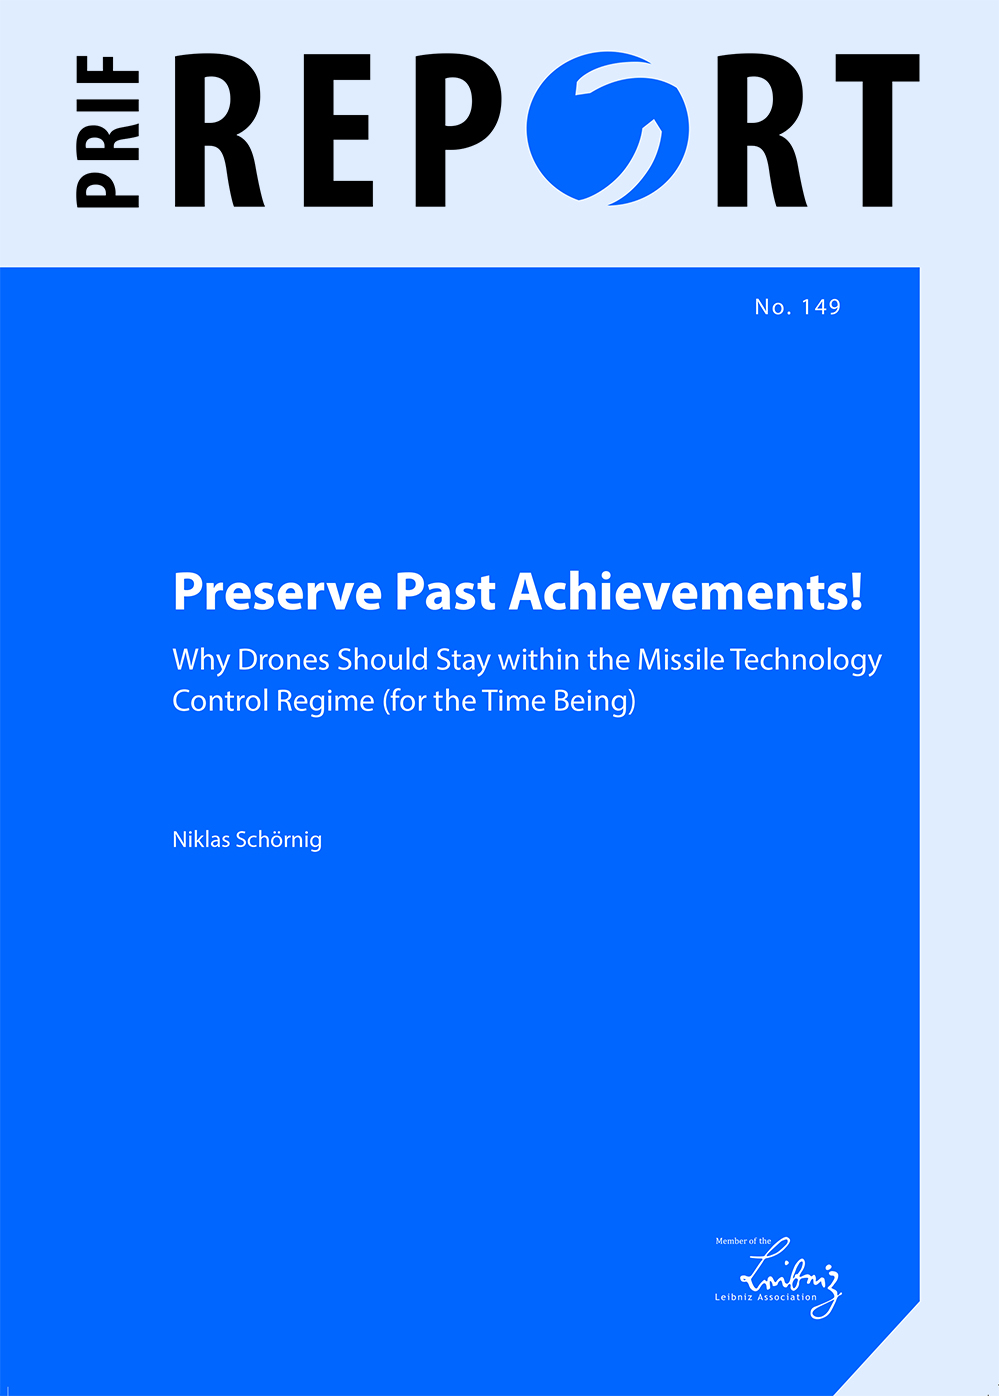 Download: Preserve Past Achievements!